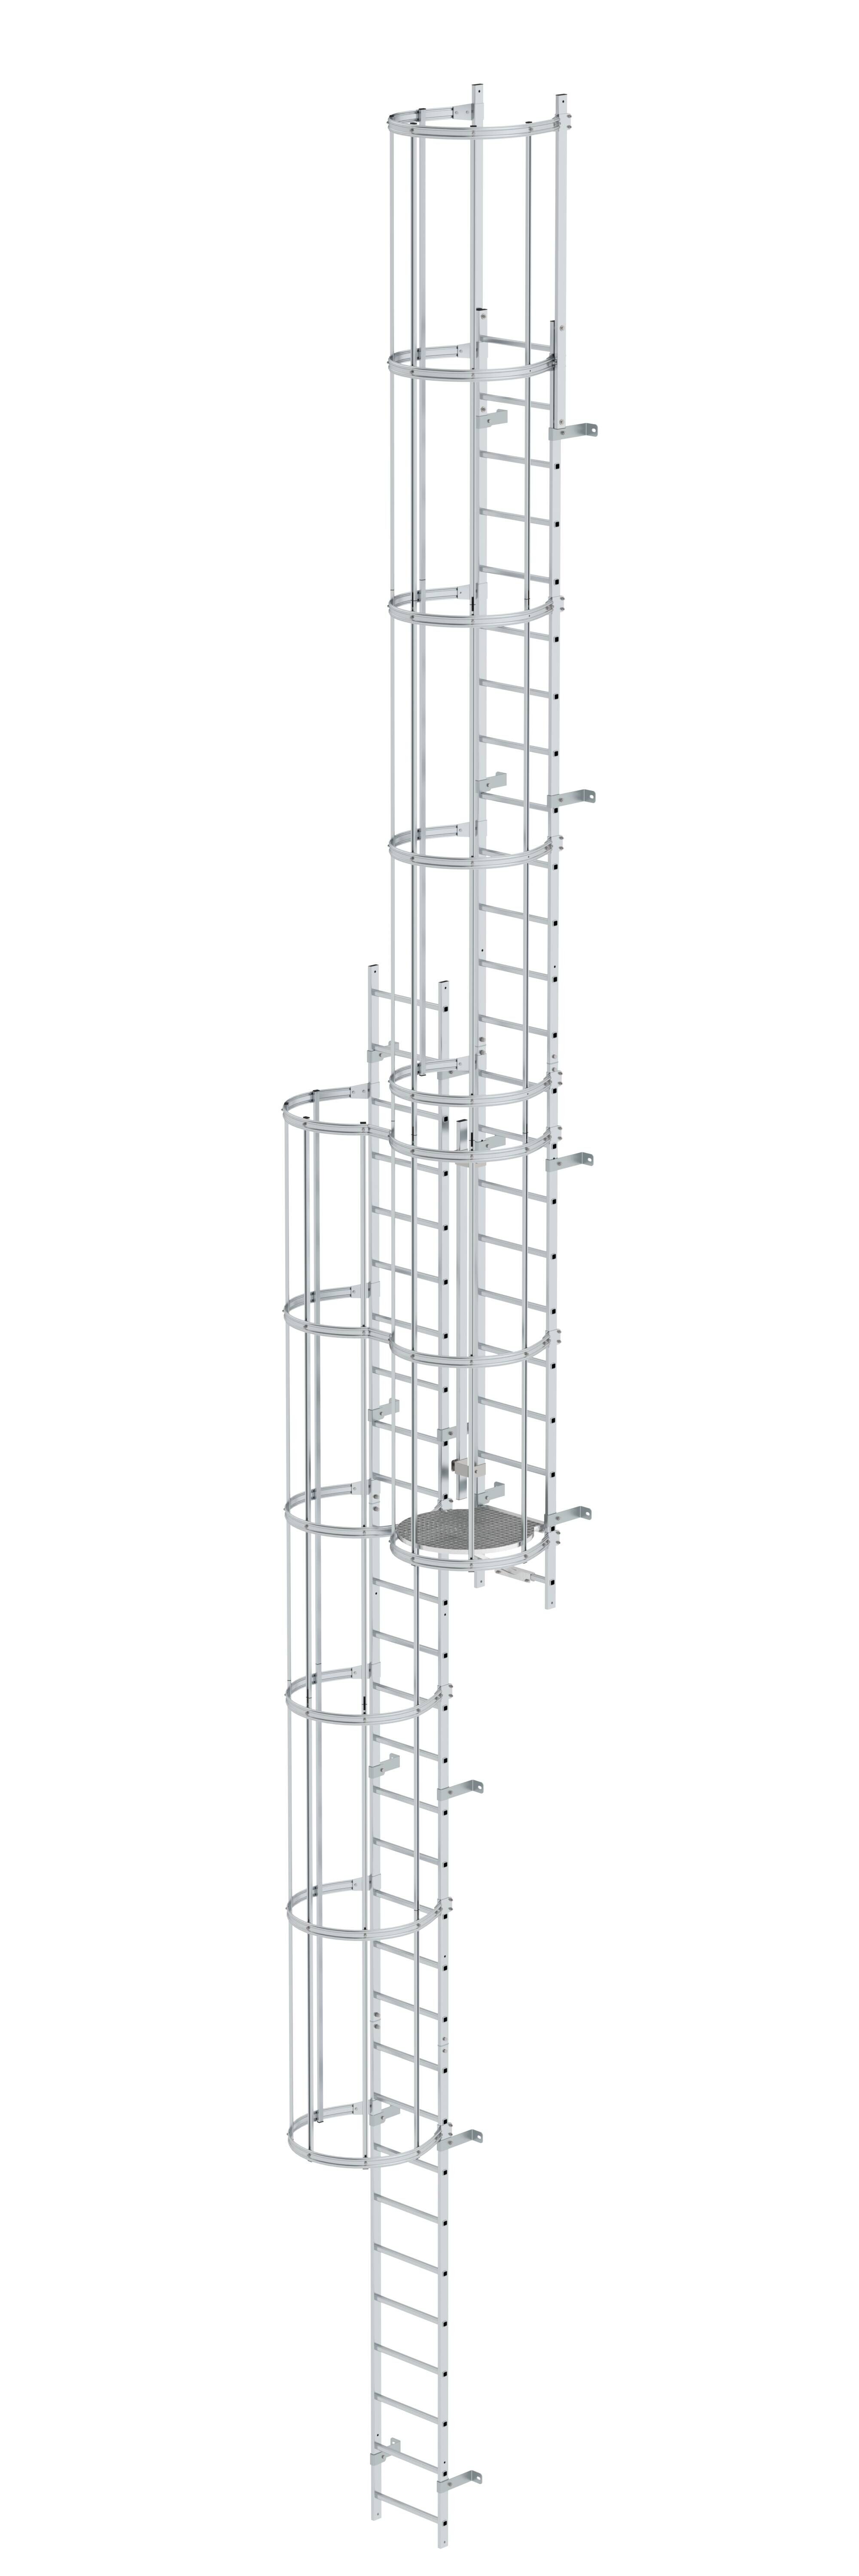 Mehrzügige Steigleiter mit Rückenschutz (Maschinen) Aluminium blank 12,96m